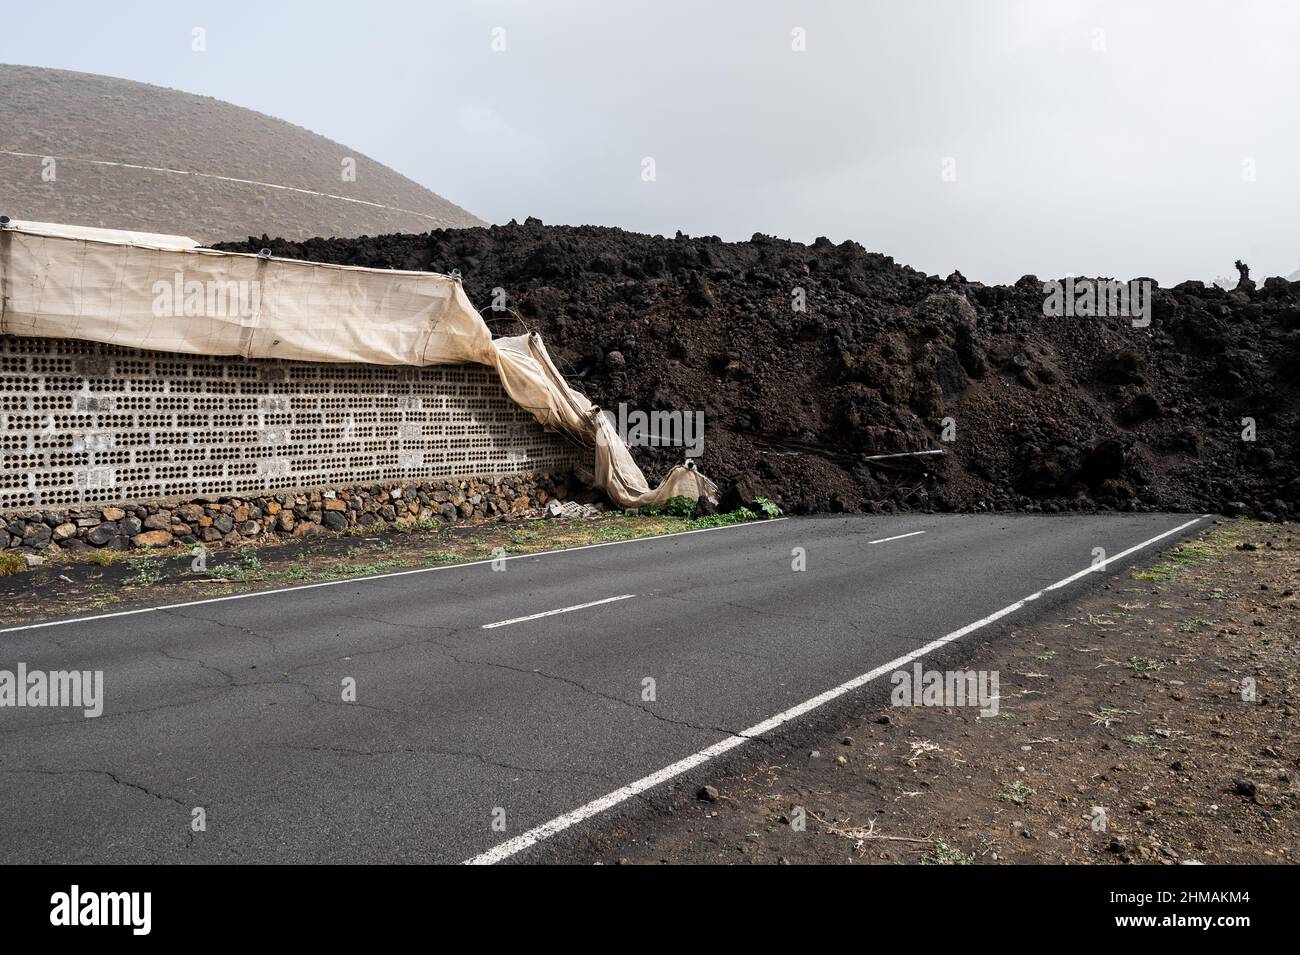 Die Lava des Vulkans Cumbre Vieja führt auf dem Weg zum Meer durch eine Straße. Viele Straßen wurden während des Ausbruchs durch vulkanische Lava blockiert Stockfoto